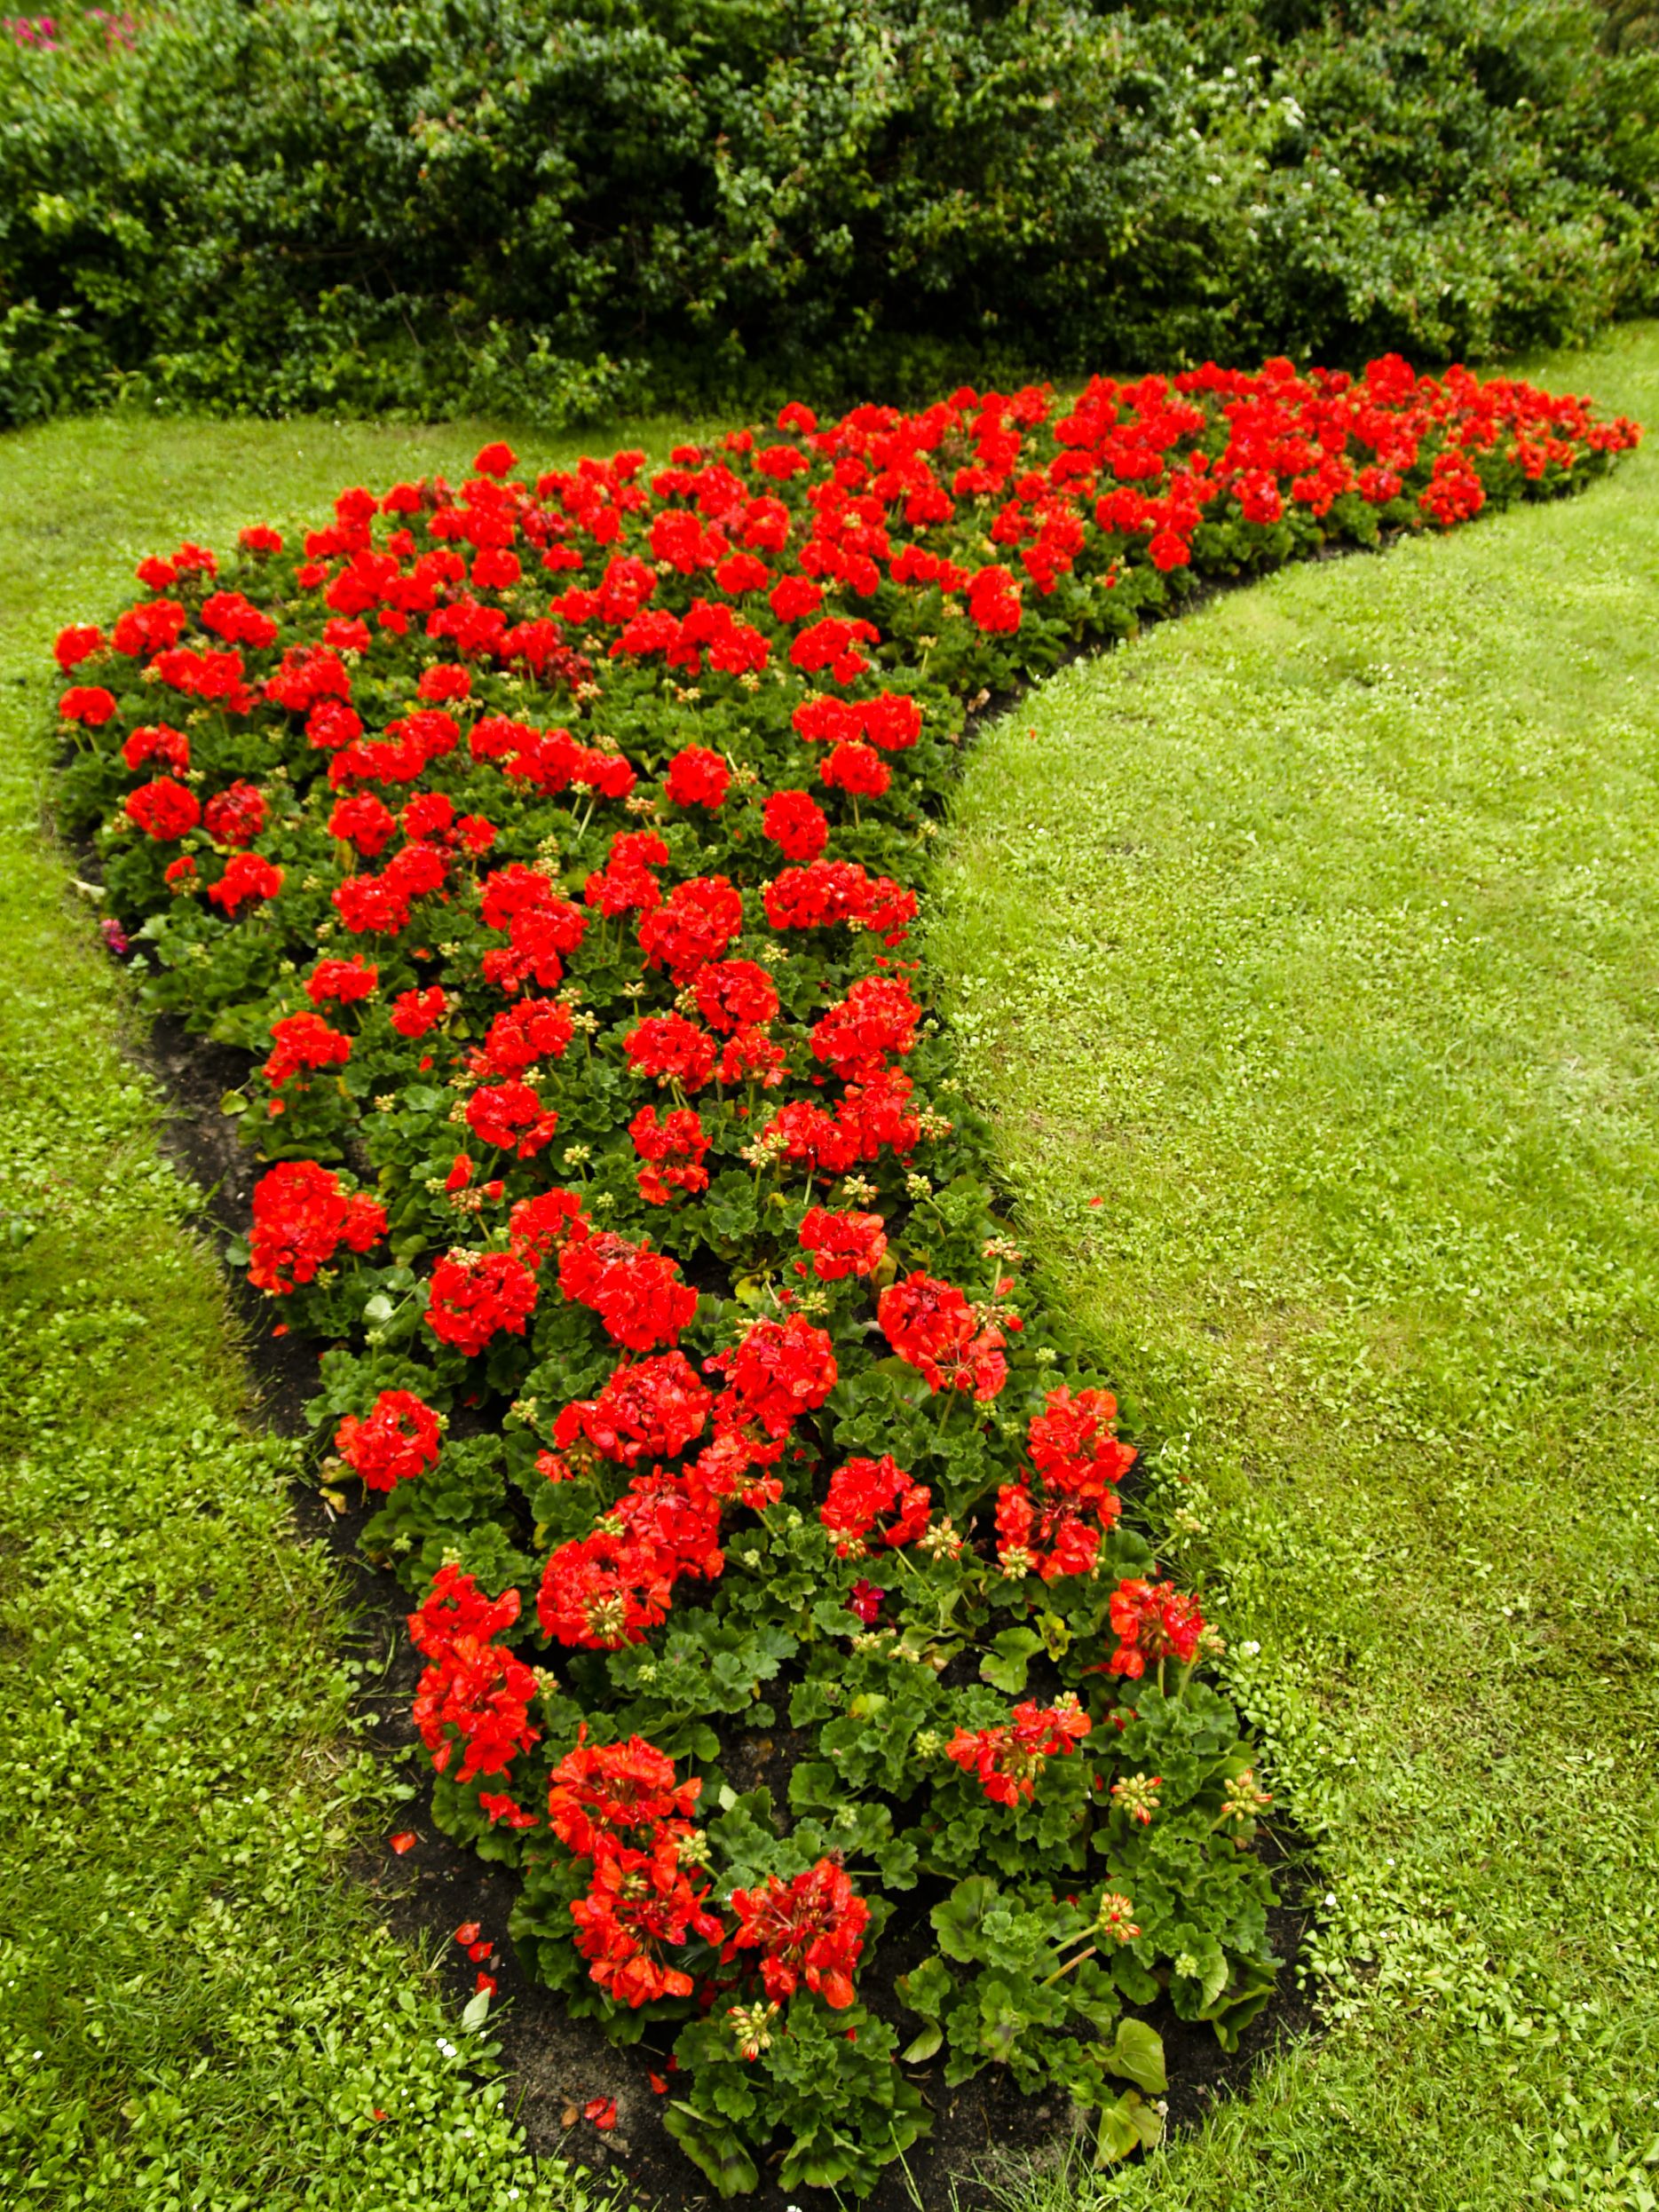 Redflowergardens Red Rose Garden